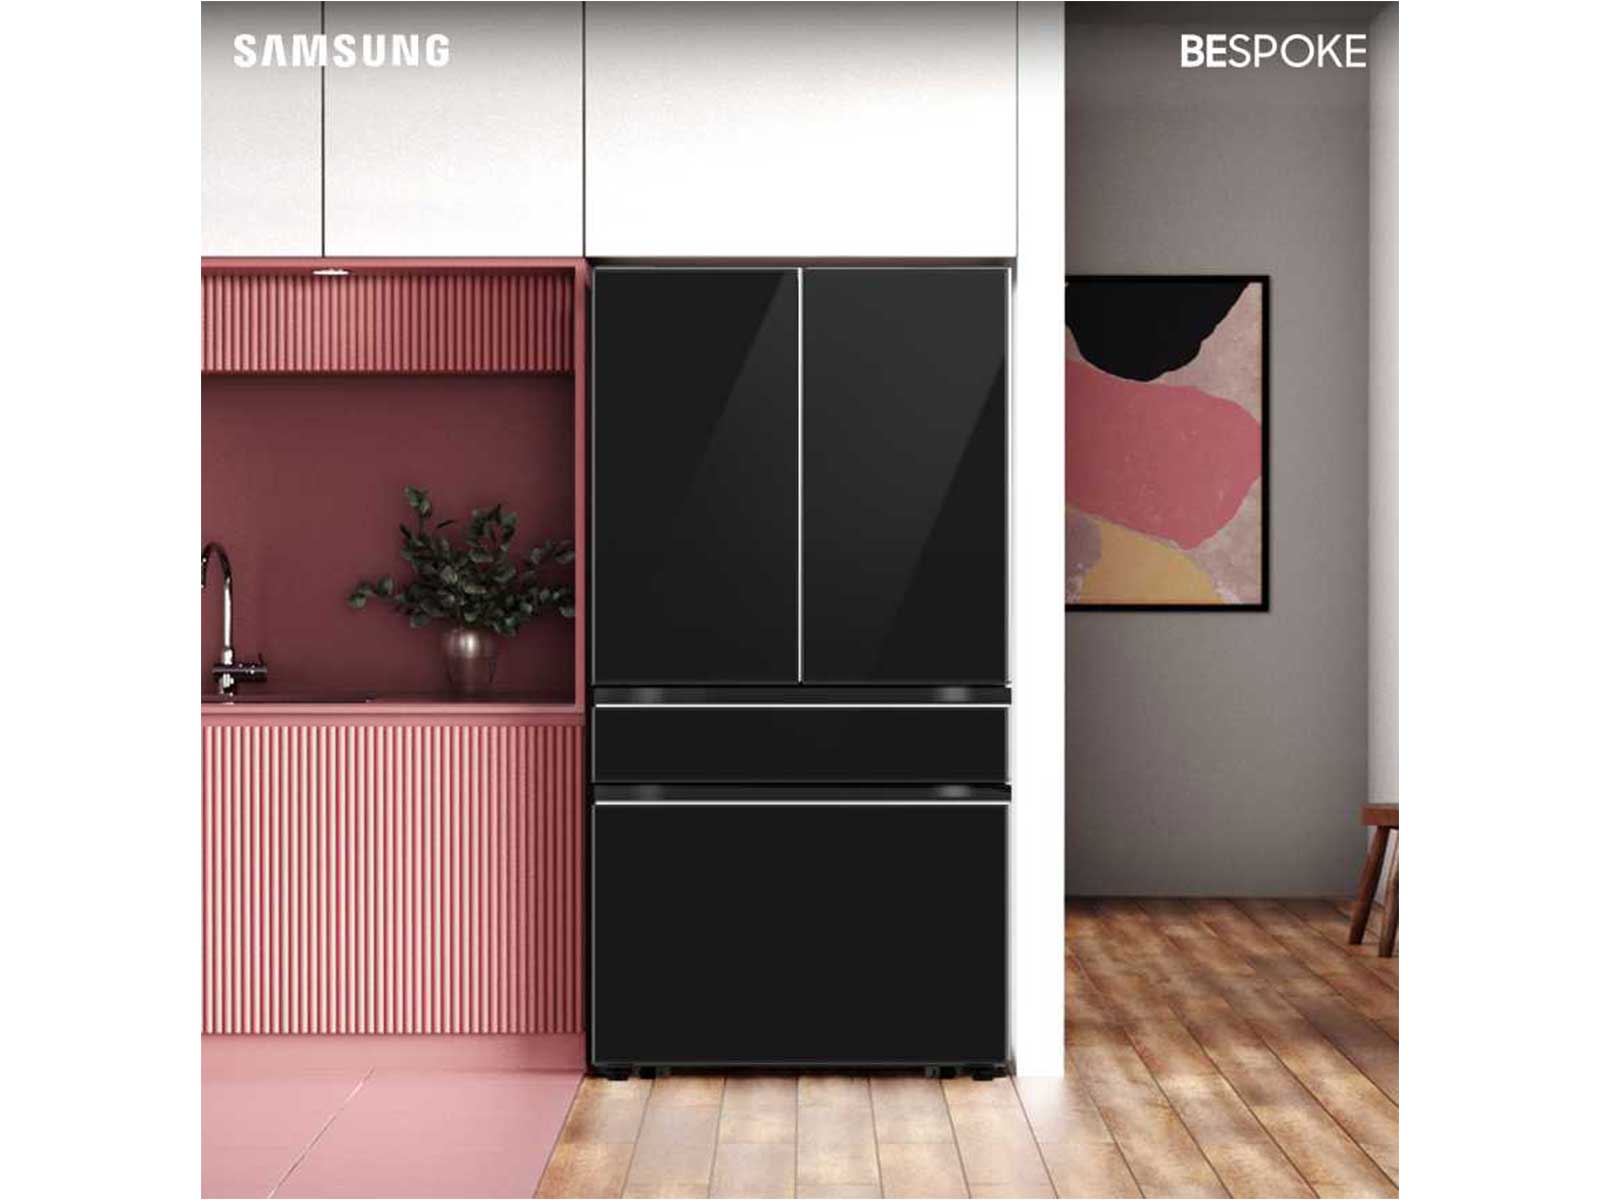 Bespoke 4-Door French Door Refrigerator Panel in Charcoal Glass